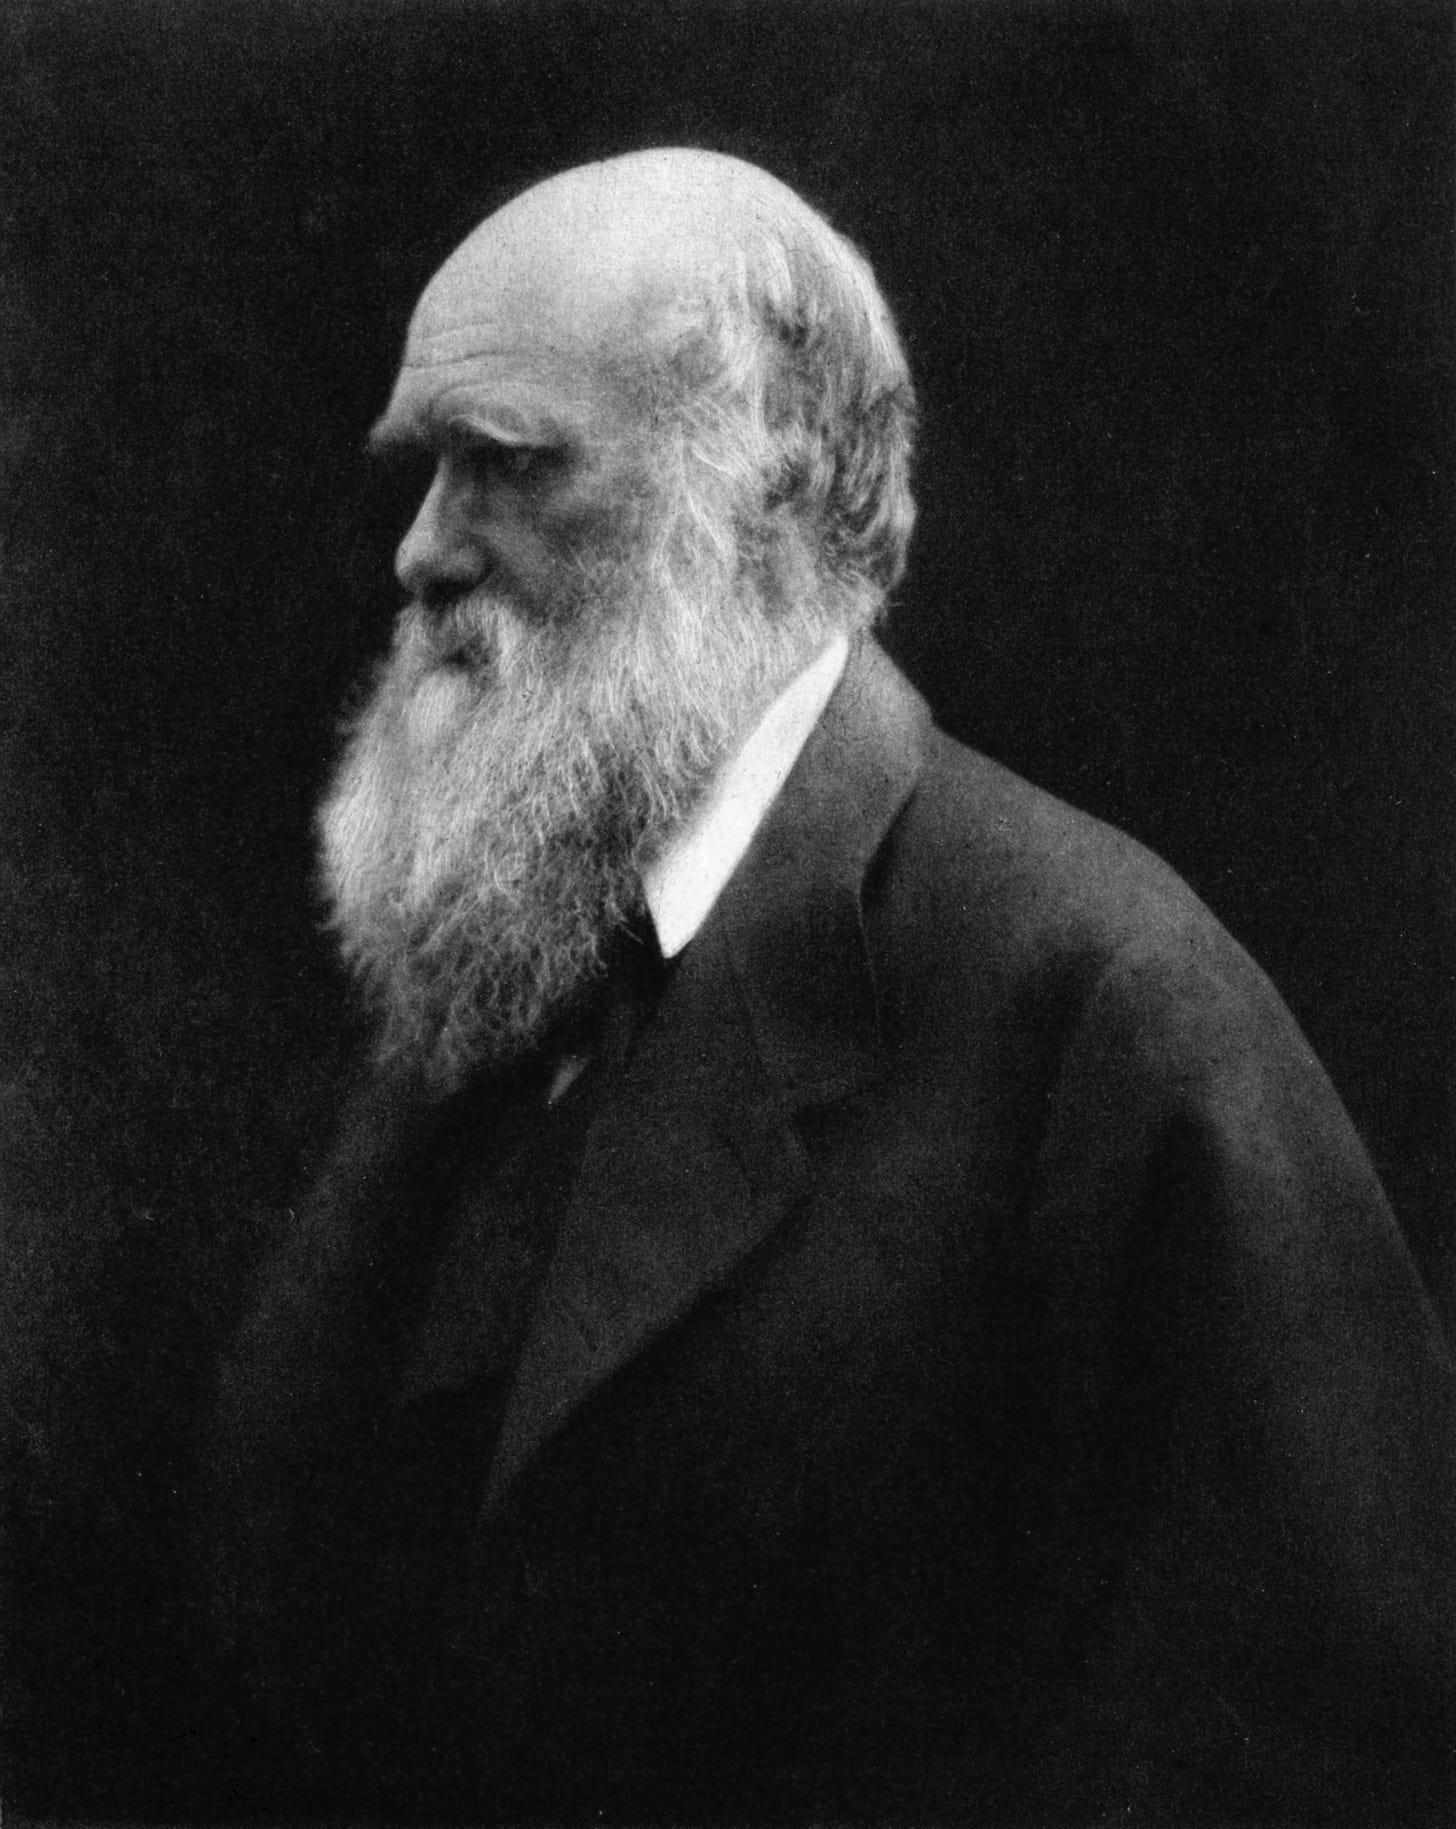 Darwinism - Wikipedia